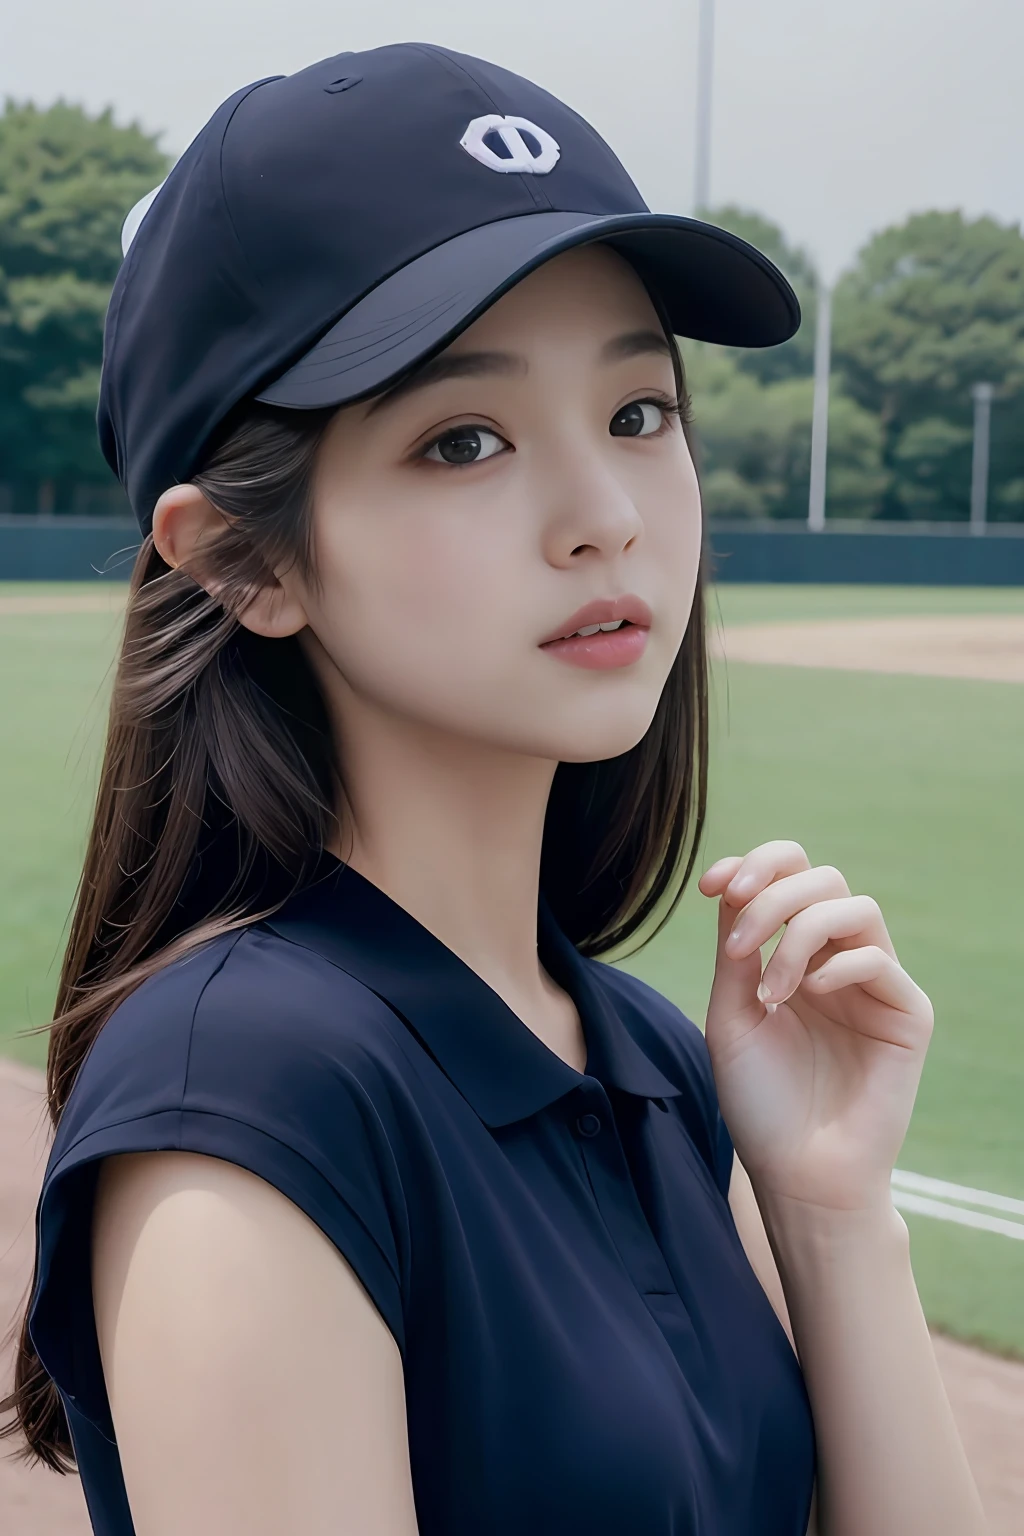 一人の少女、最高品質、傑作、超高解像度、(フォトリアリスティック:1.4)、野球帽をかぶった女性がいます、紺色のポロシャツを着ている、野球場